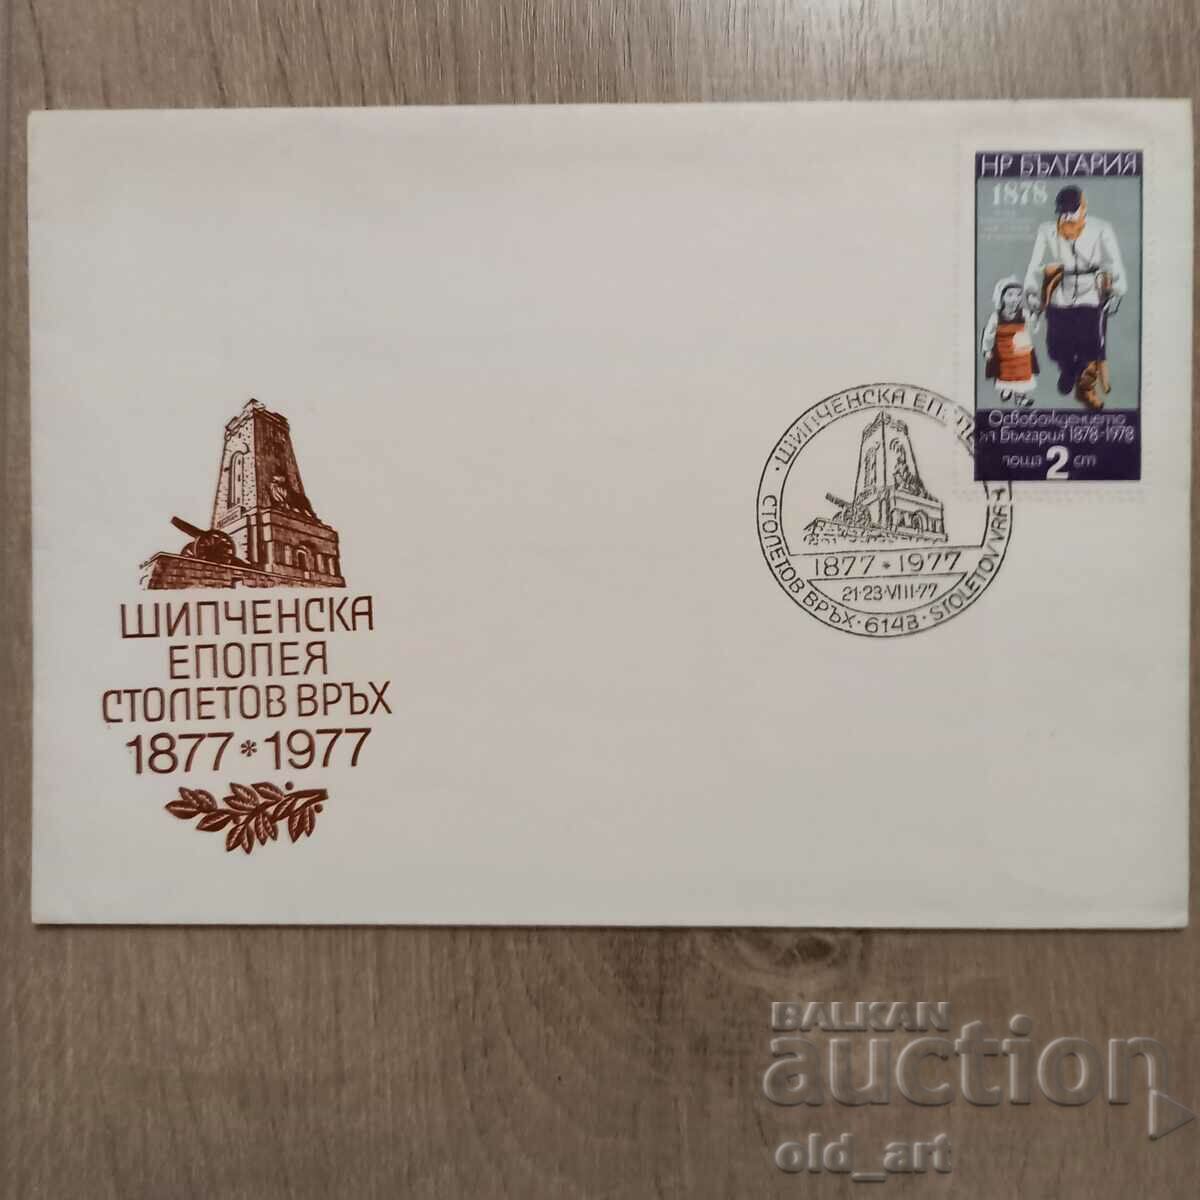 Postal envelope - Shipchen epic Stoletov vrah